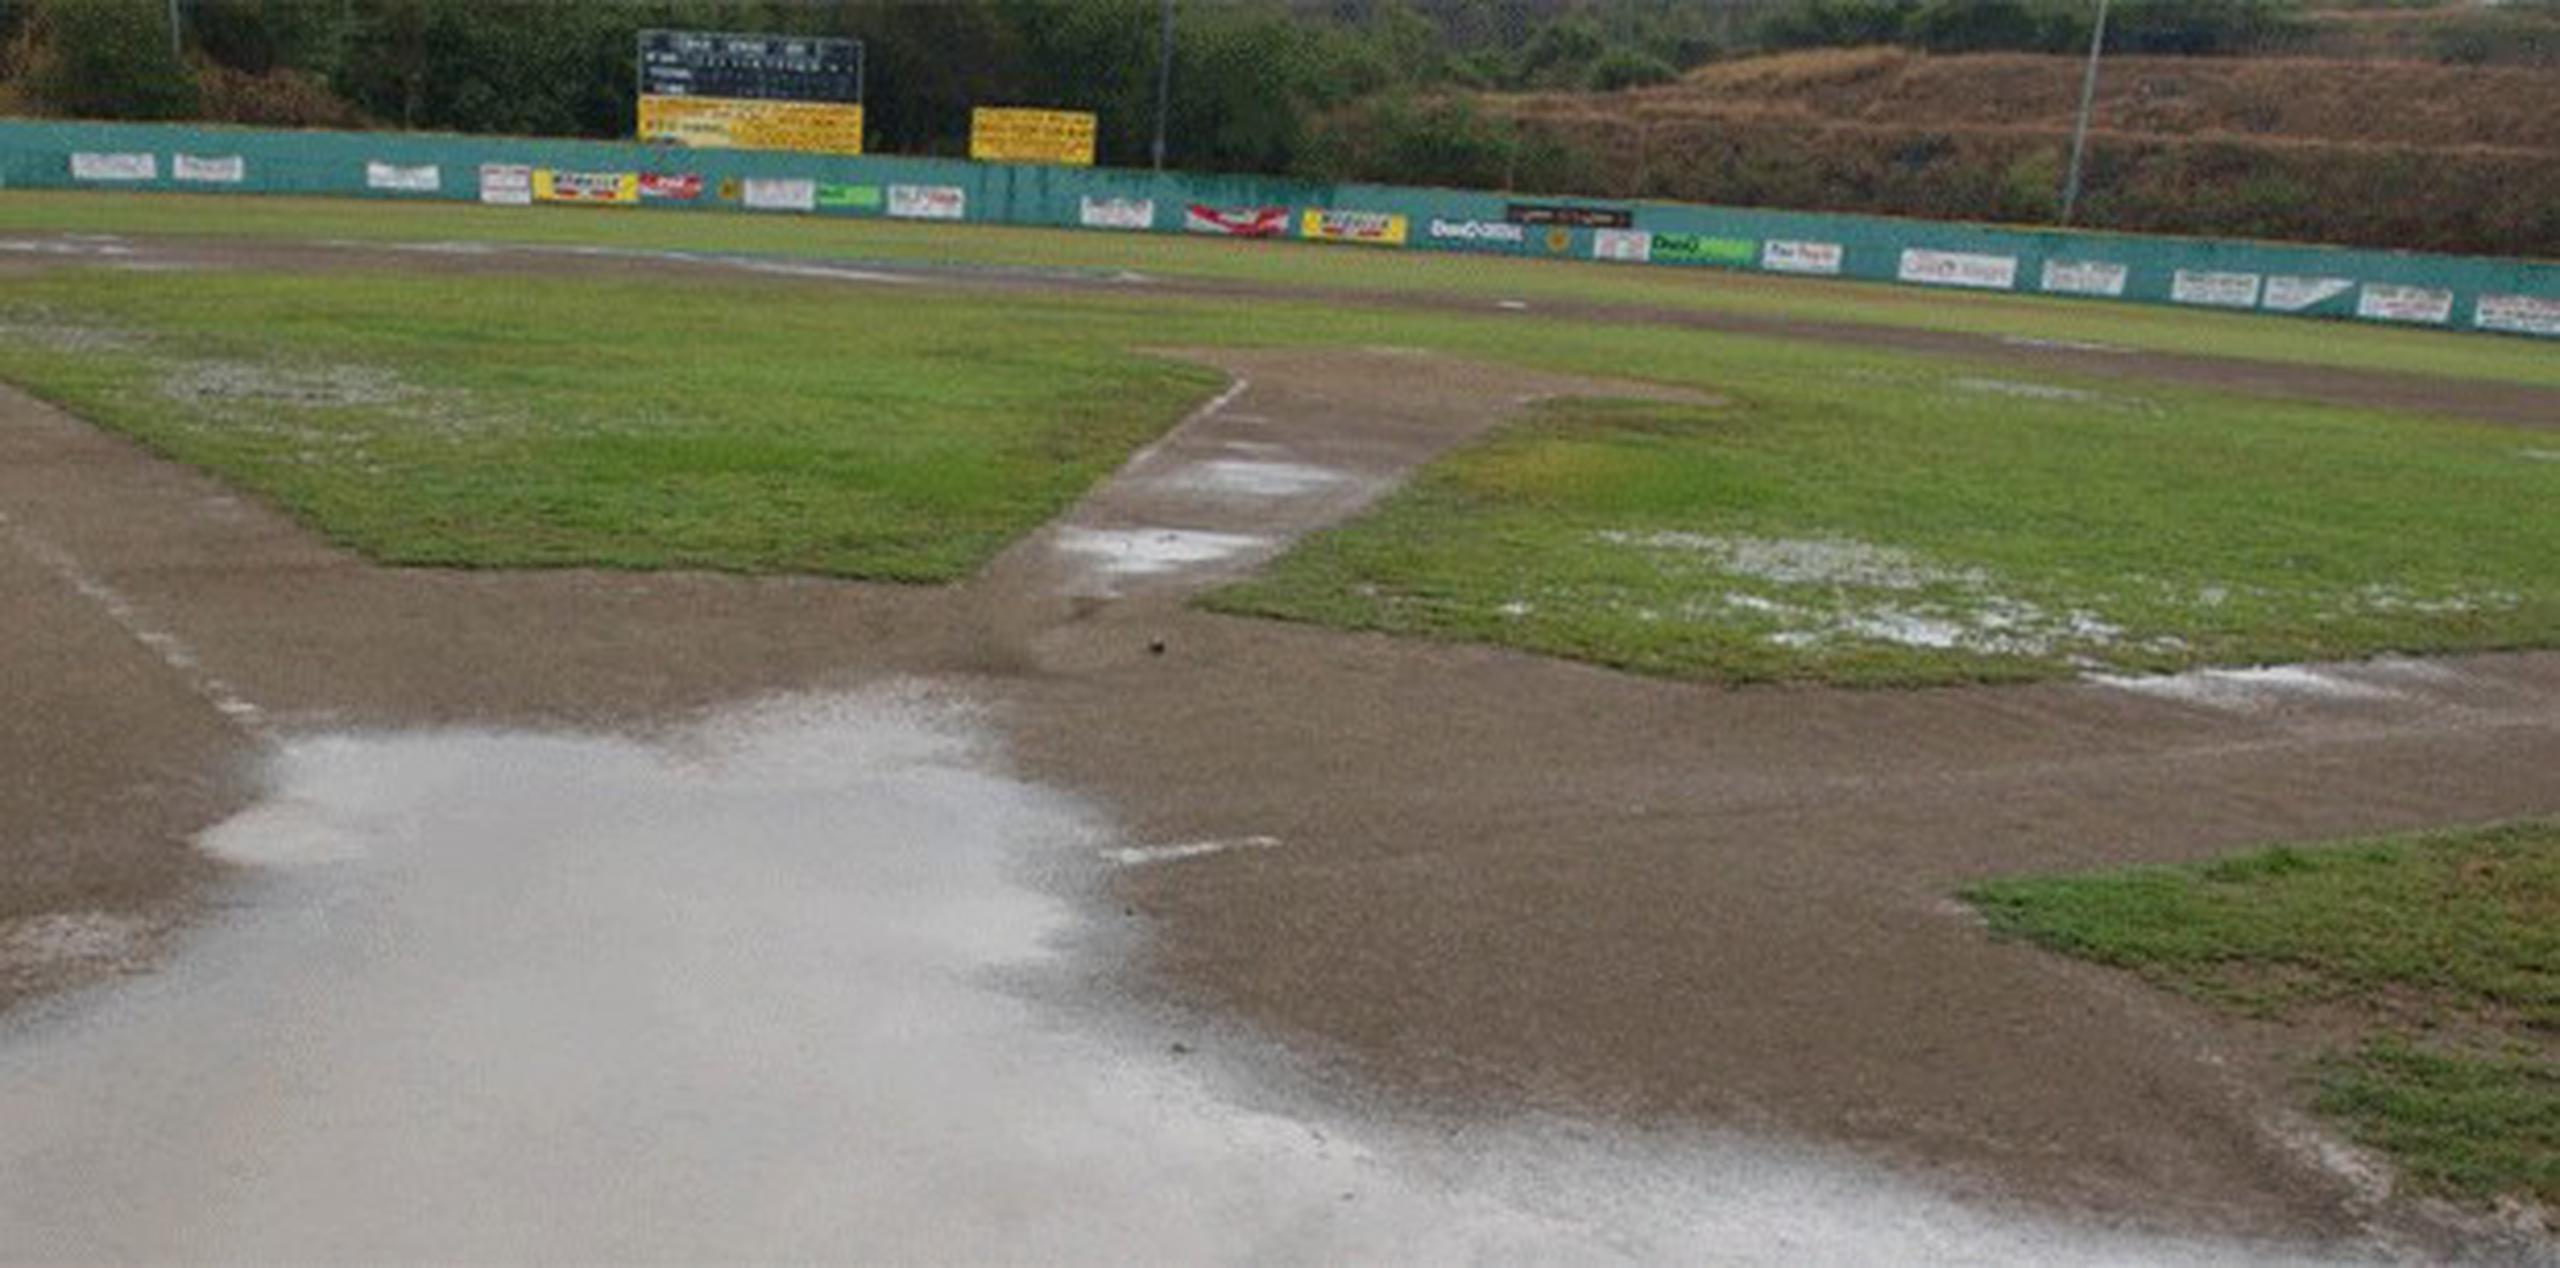 En caso de que llueva mañana, jueves, el juego del viernes se moverá al estadio de Aguada. (Archivo)